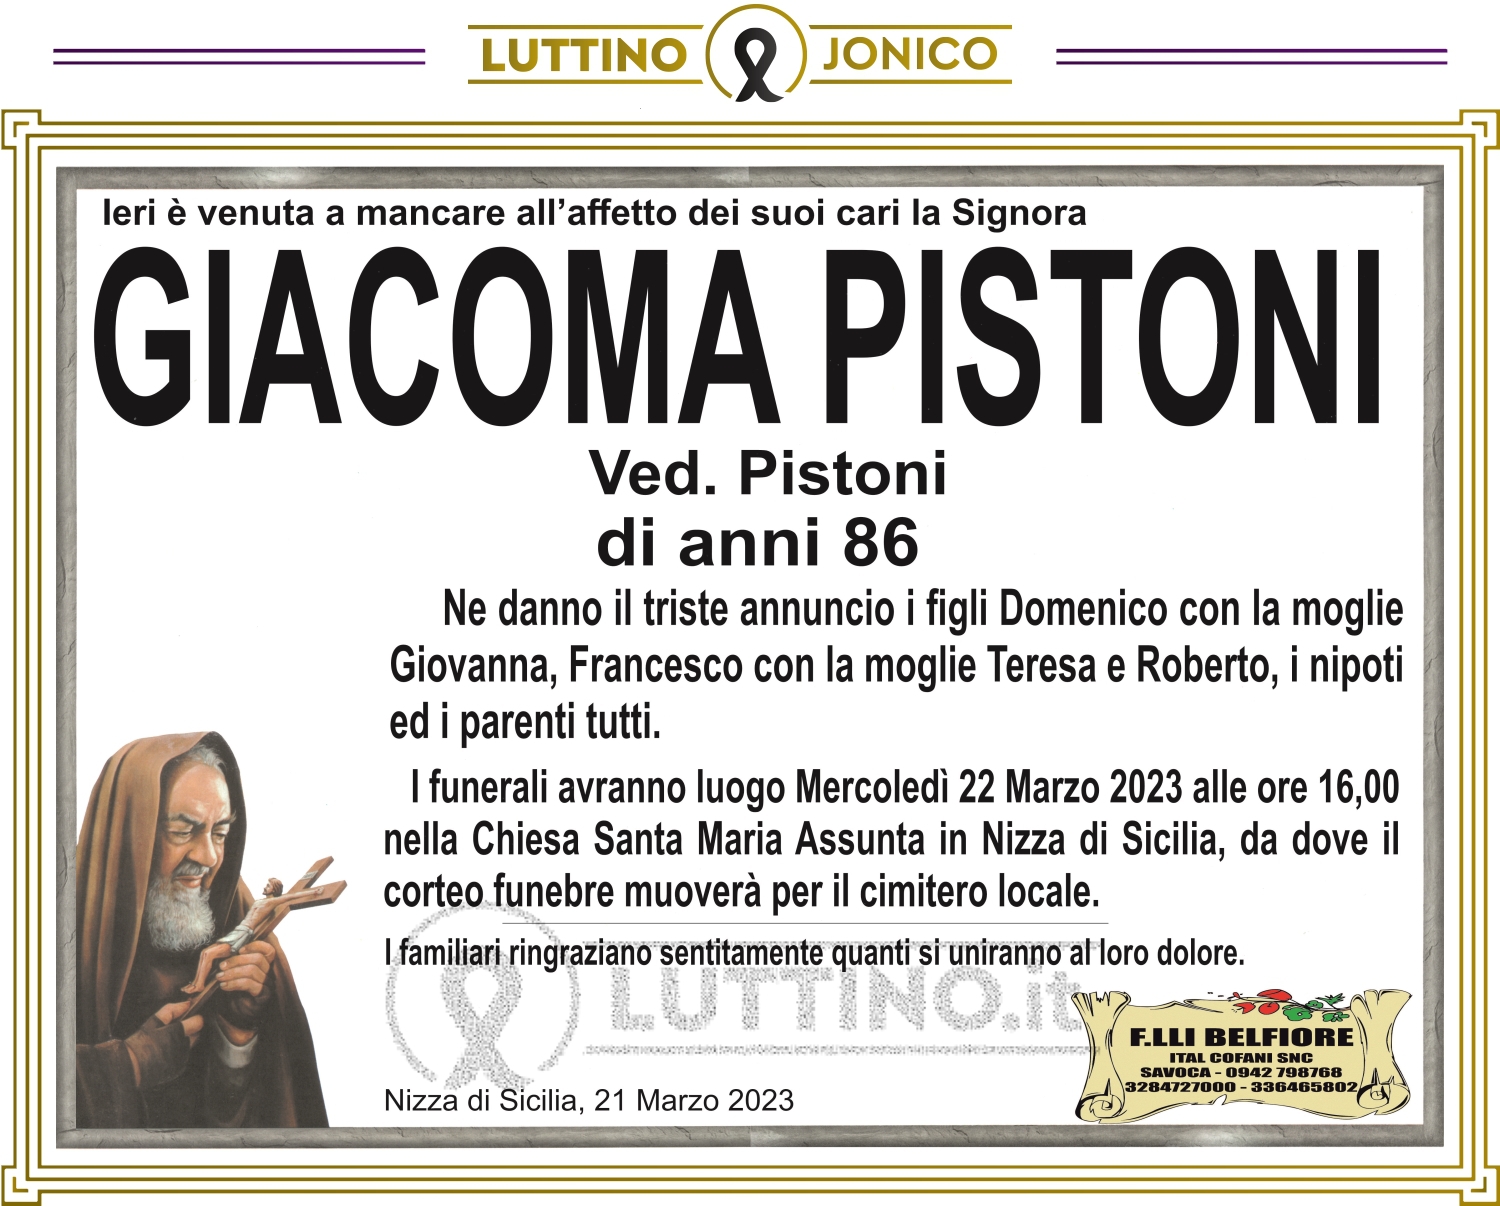 Giacoma Pistoni